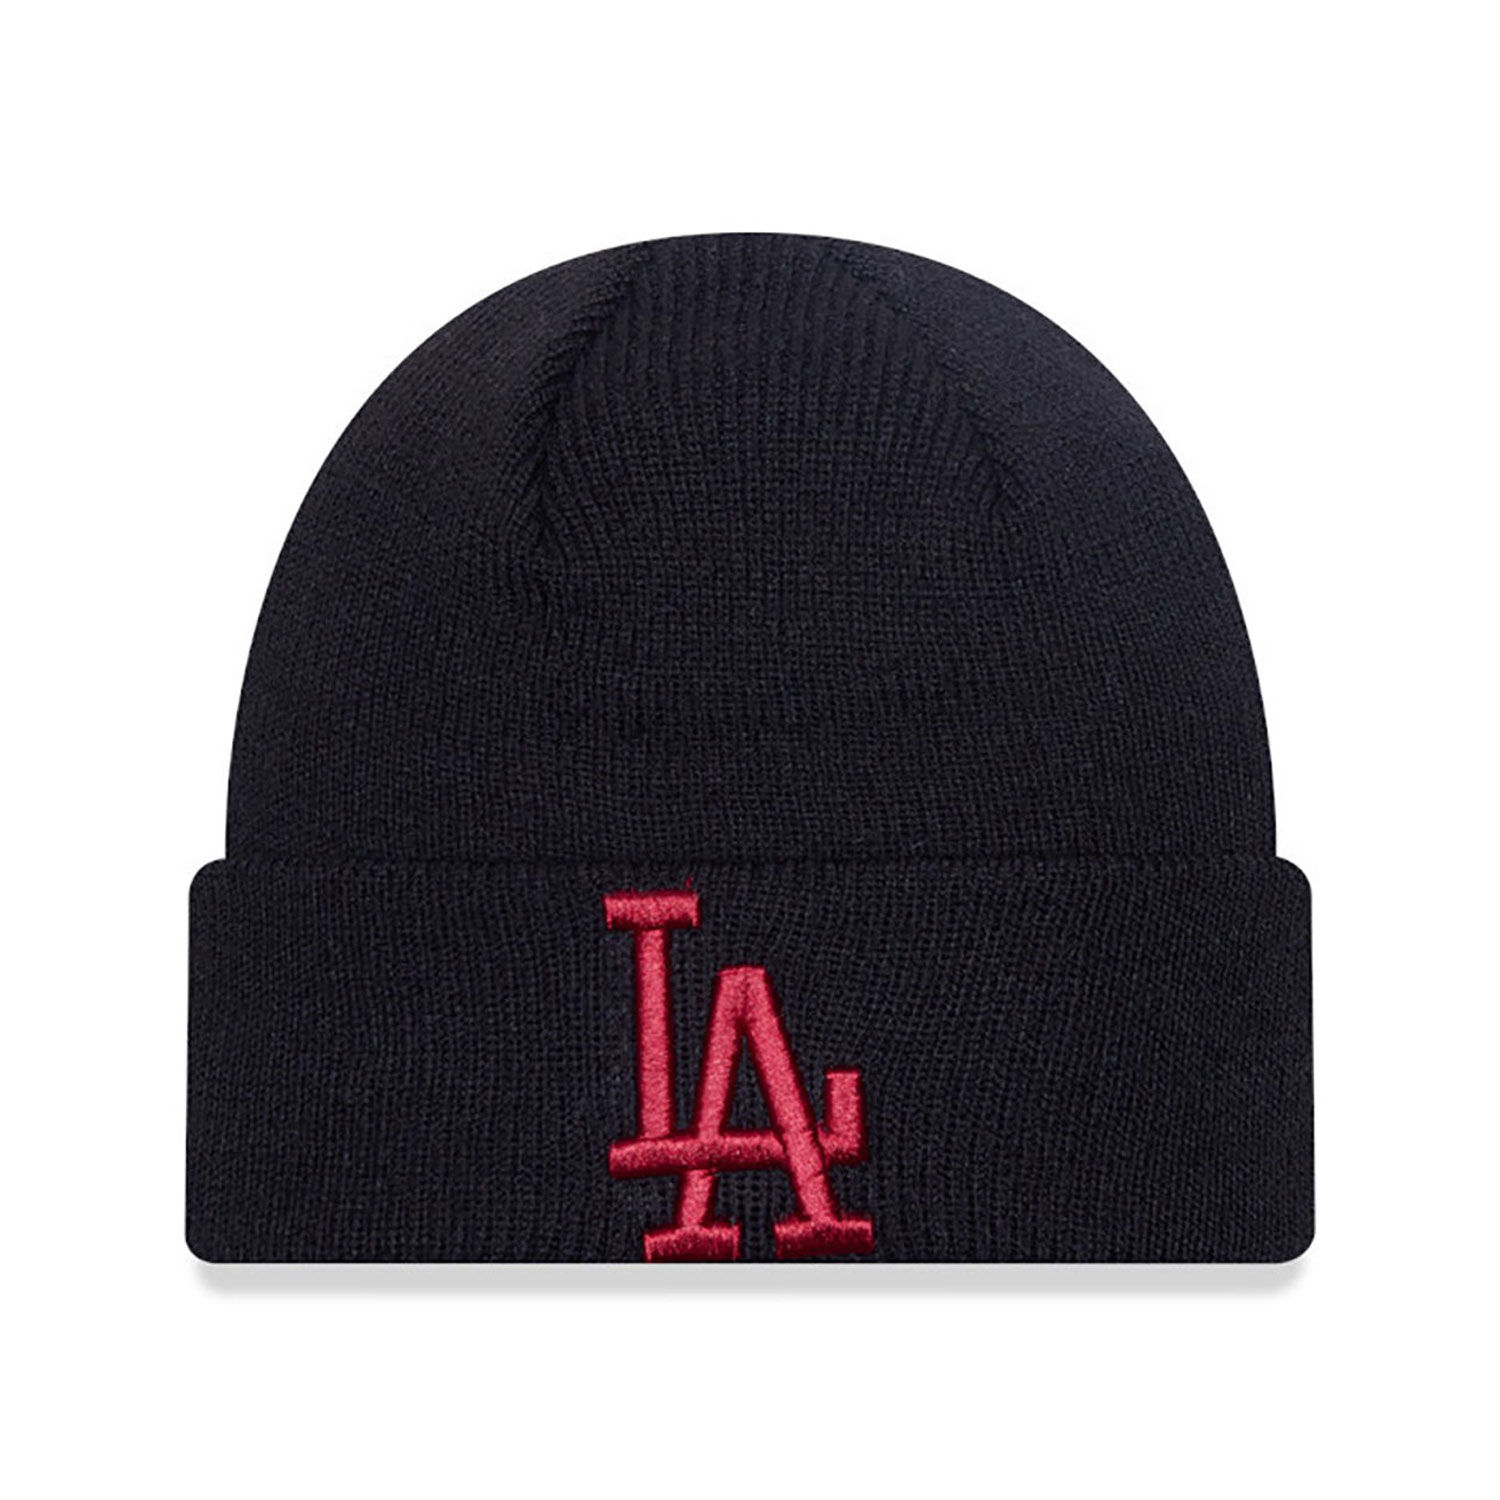 LA Lakers Essential Black Cuff Knit Beanie Hat